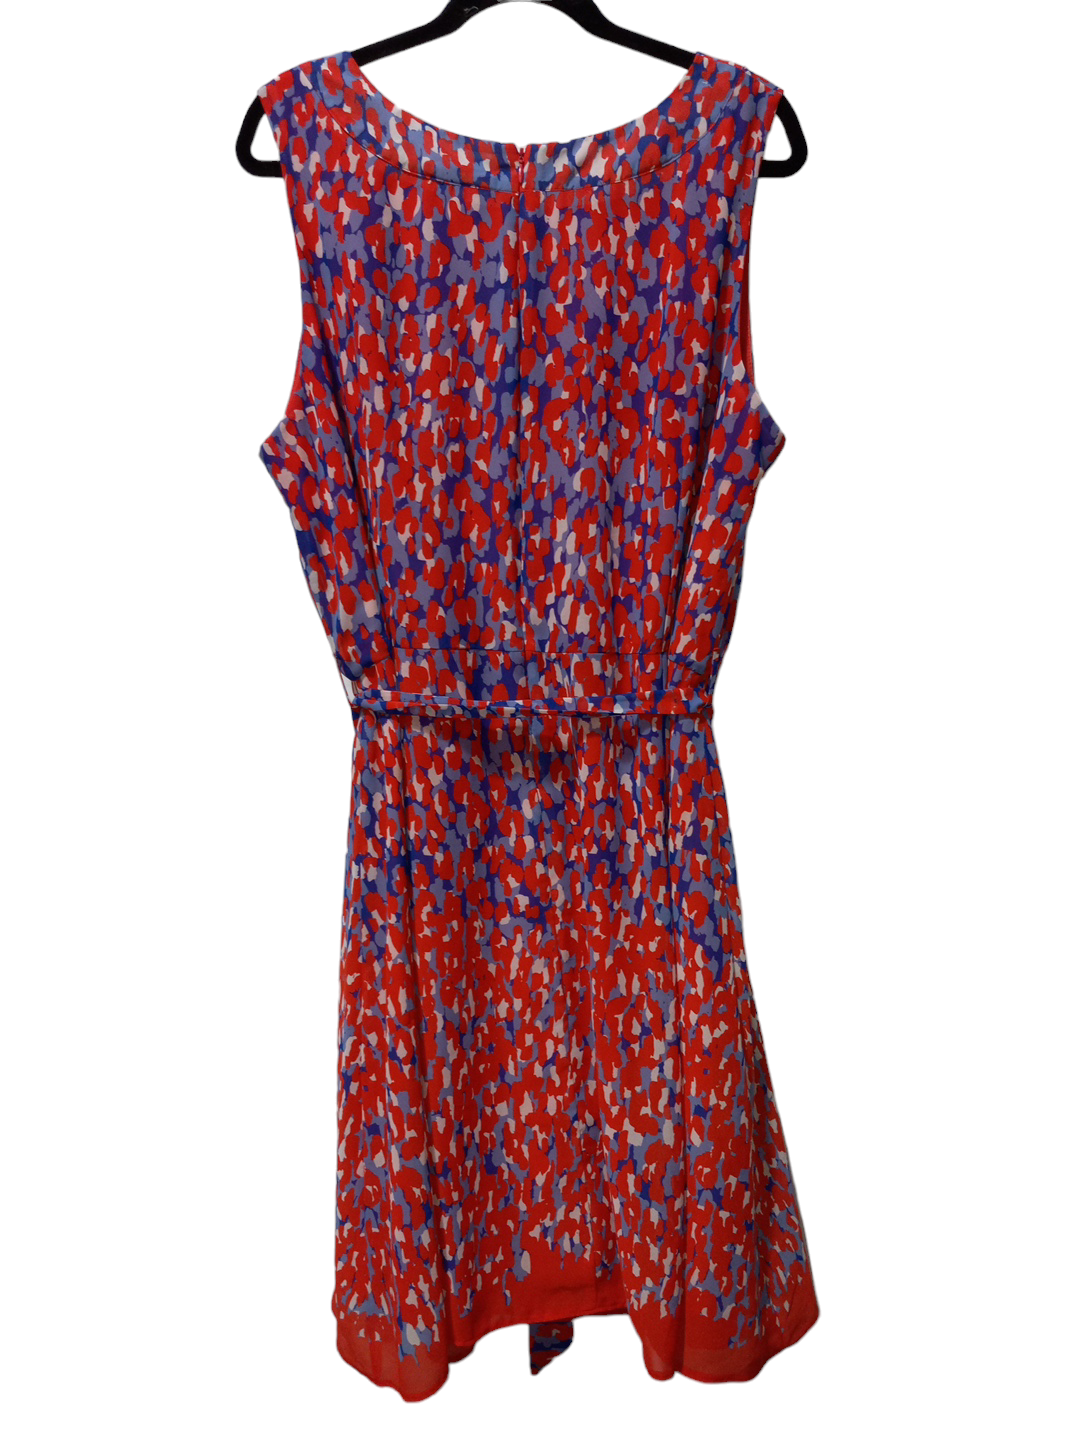 Multi-colored Dress Casual Short Voir Voir, Size 2x